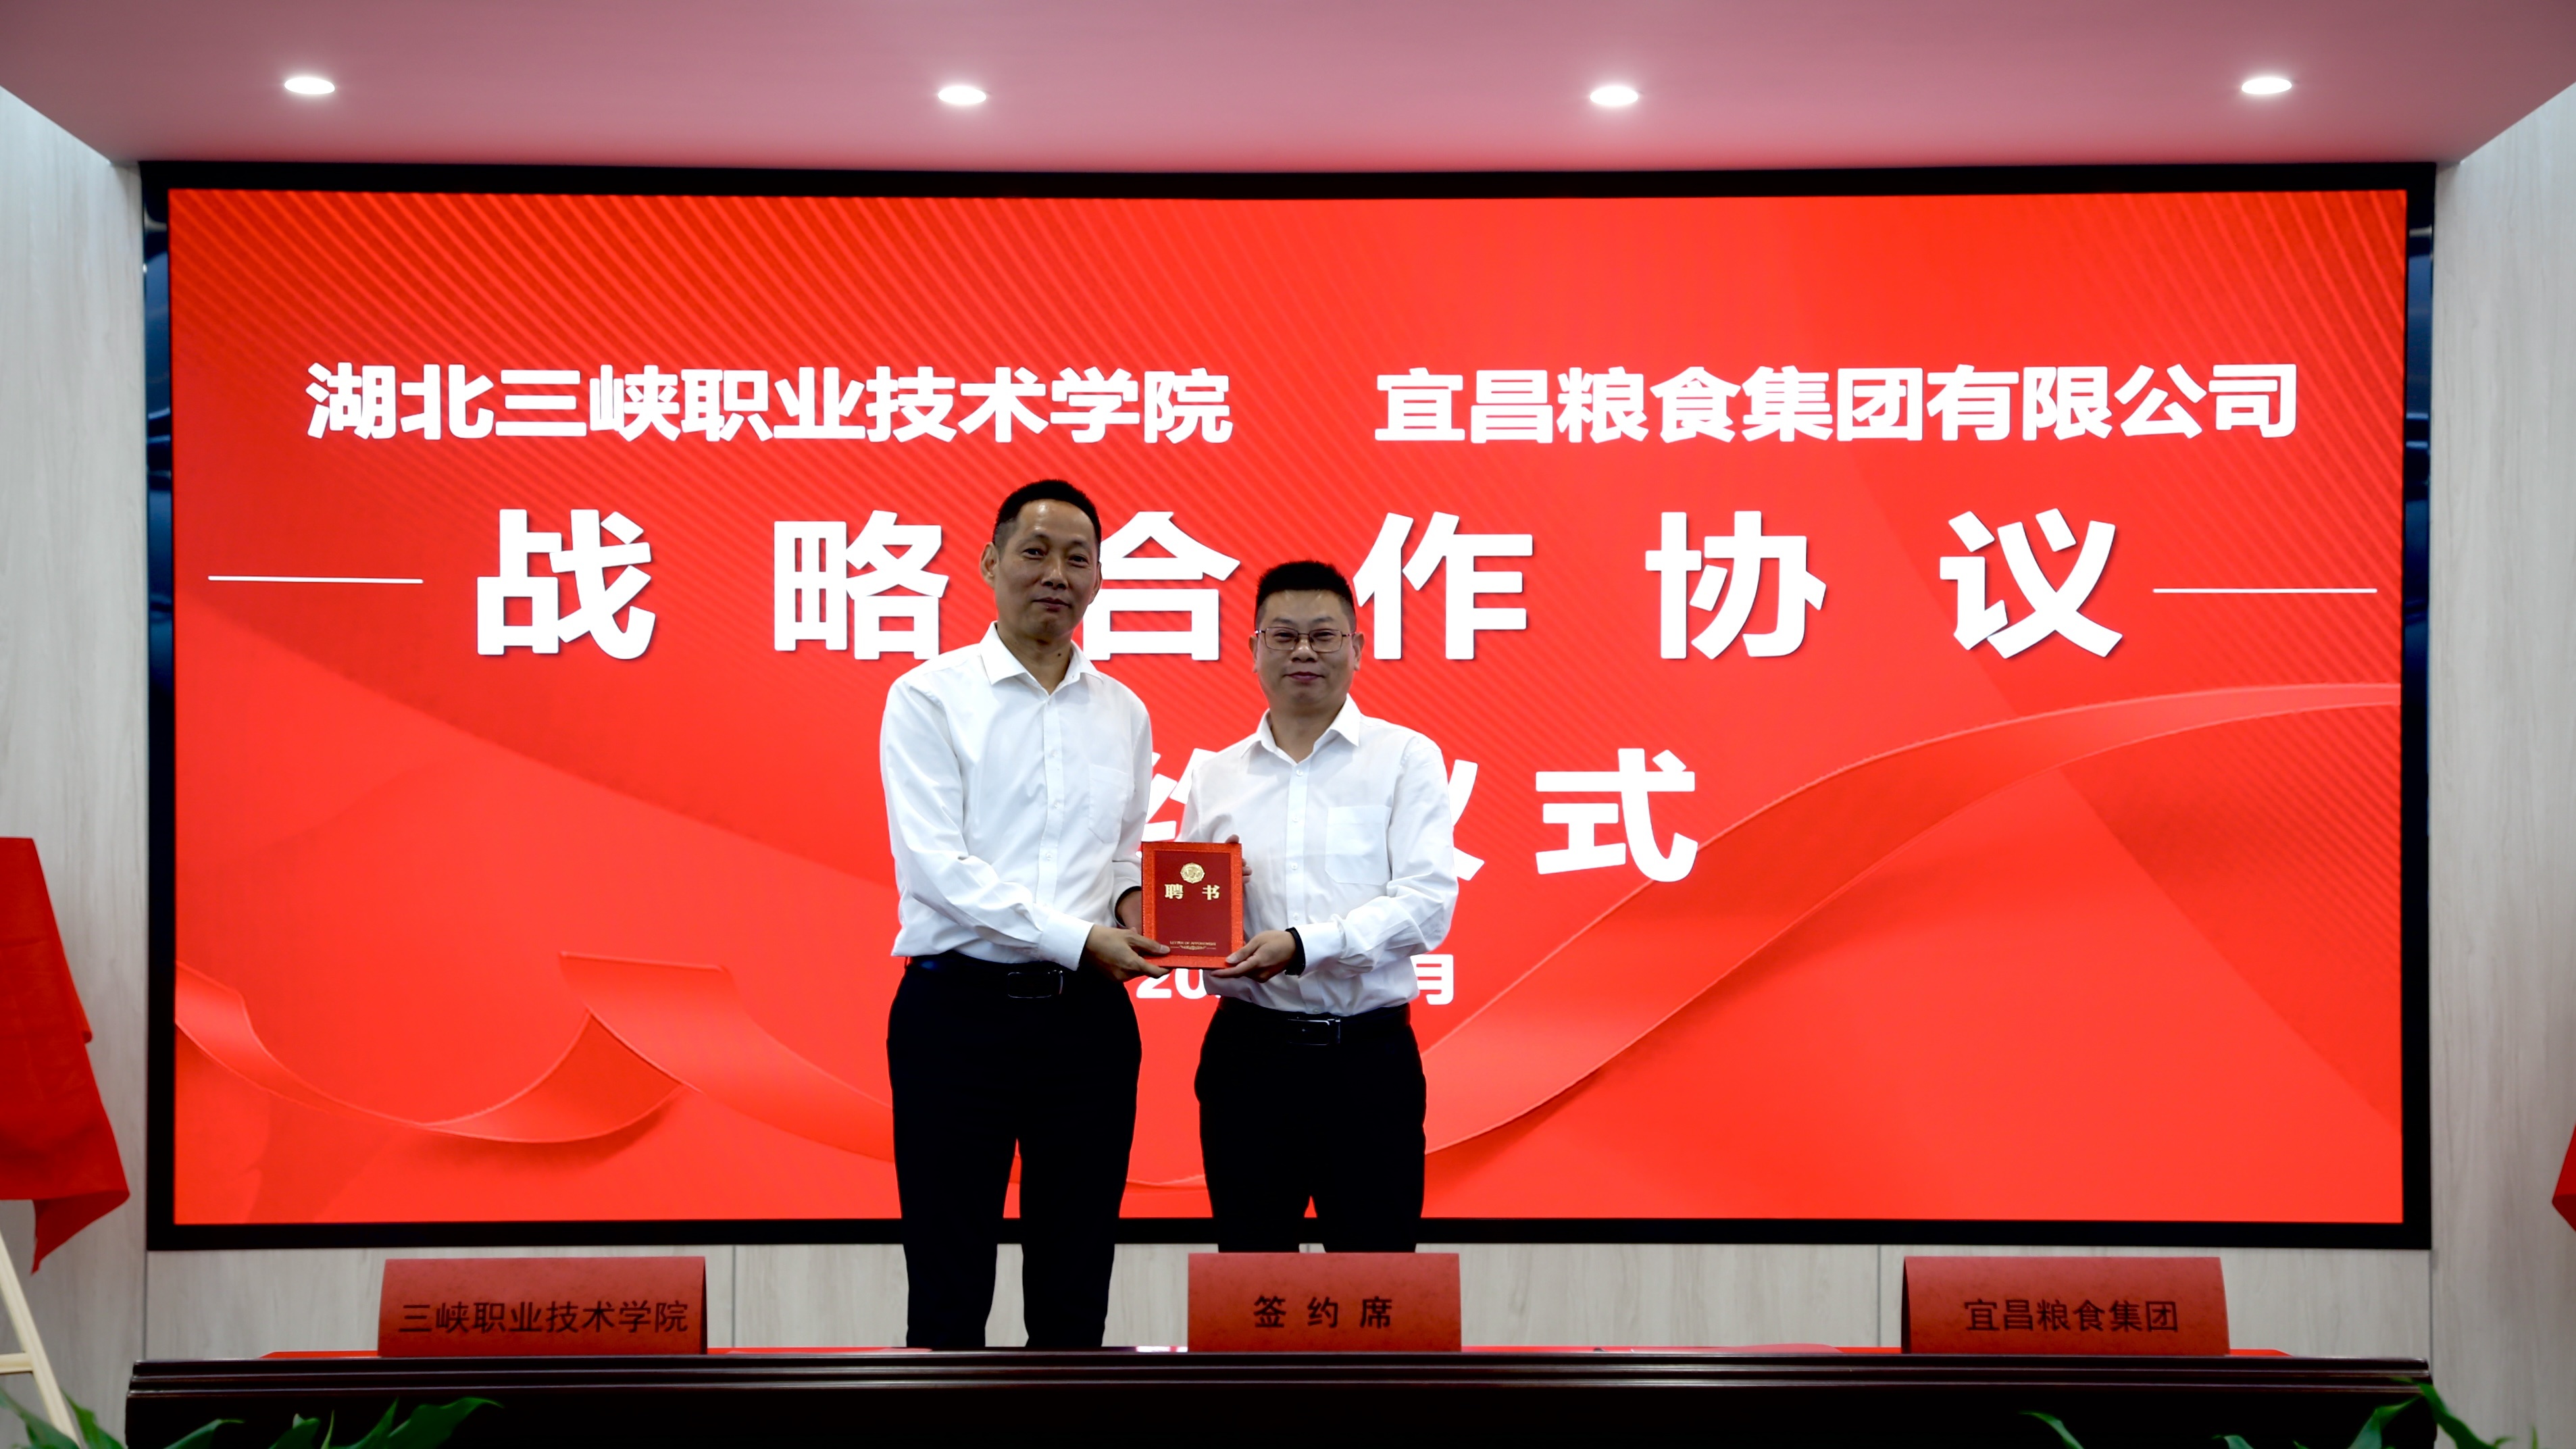 宜昌粮食集团与三峡职业技术学院签订战略合作协议